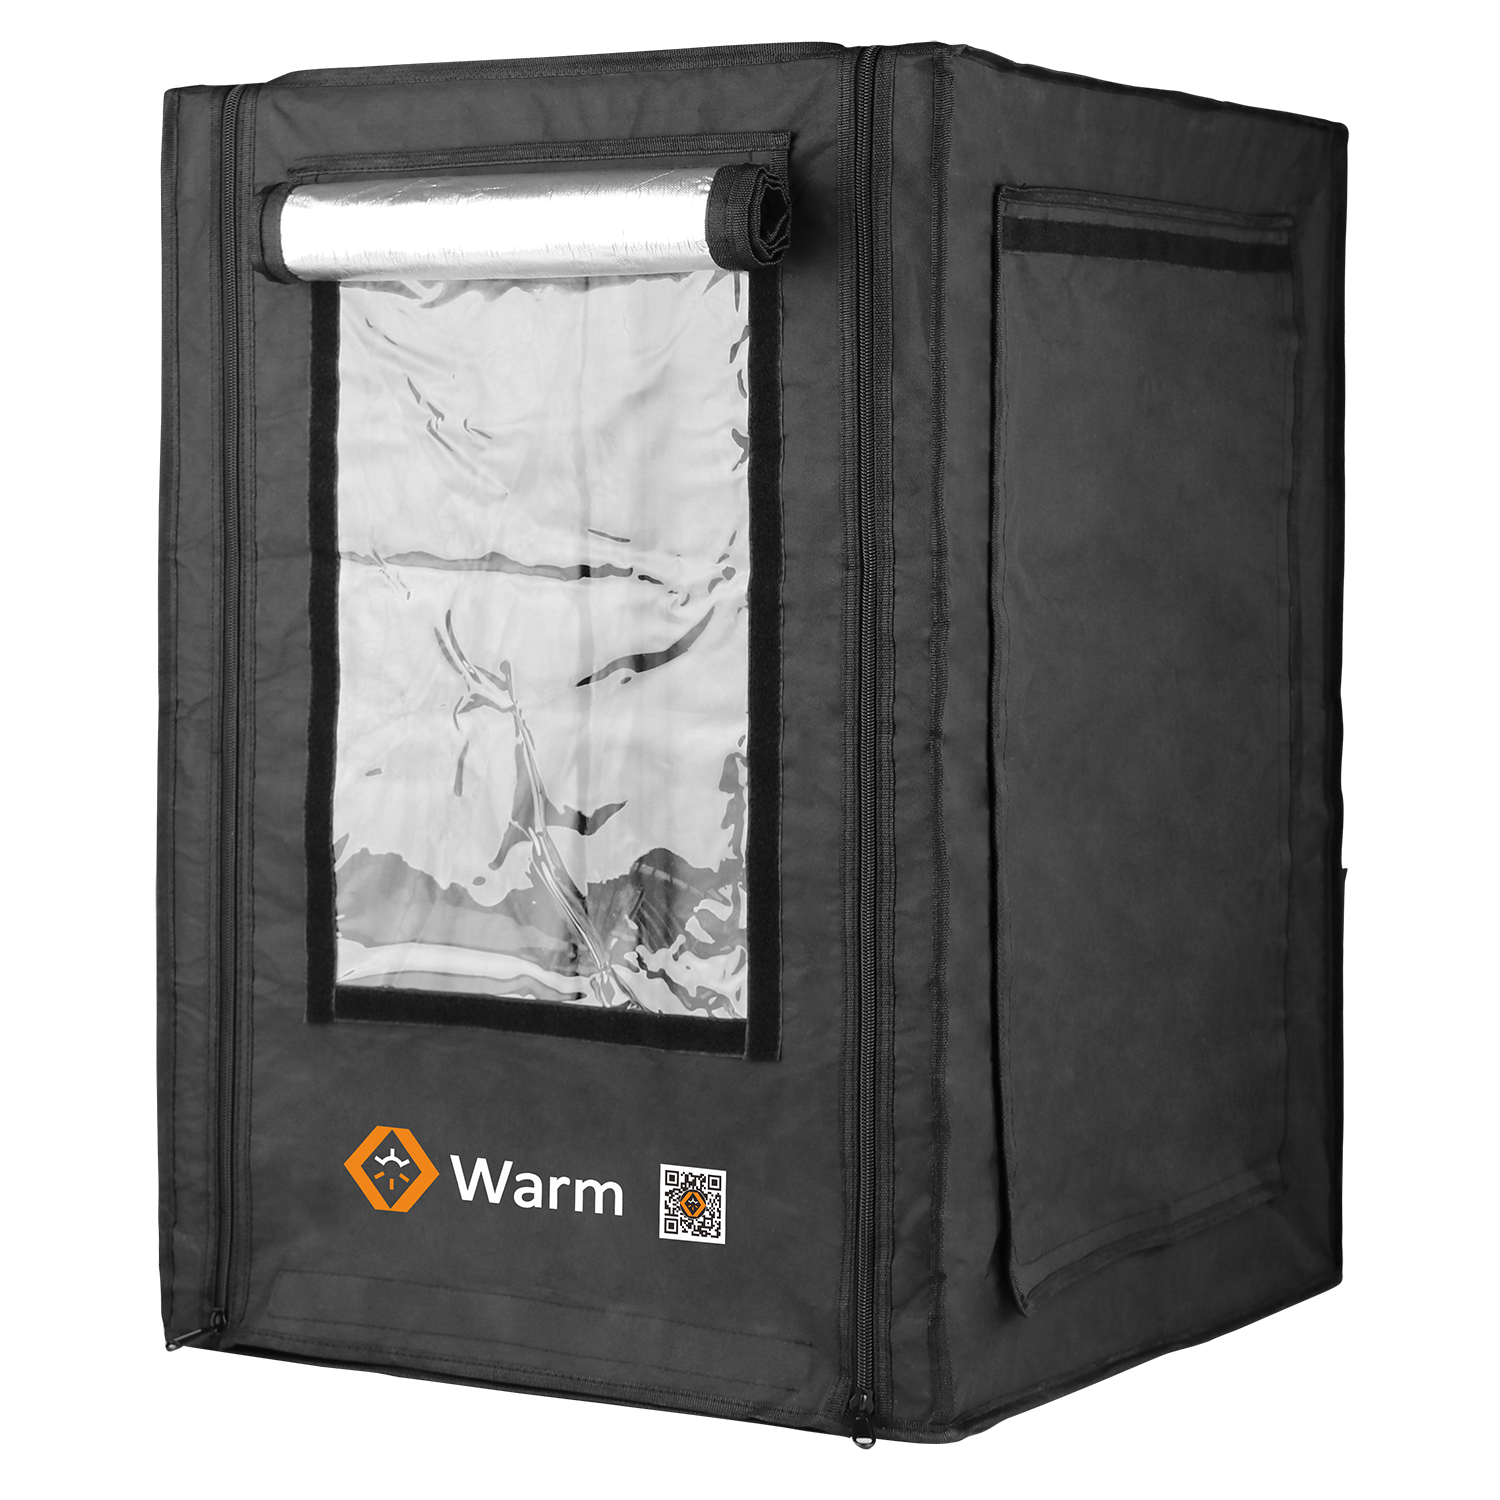 Gabinete de impressora 3D Max, mantenha aquecido, retardante de chamas, cobertura total e um estúdio, Warm Max
